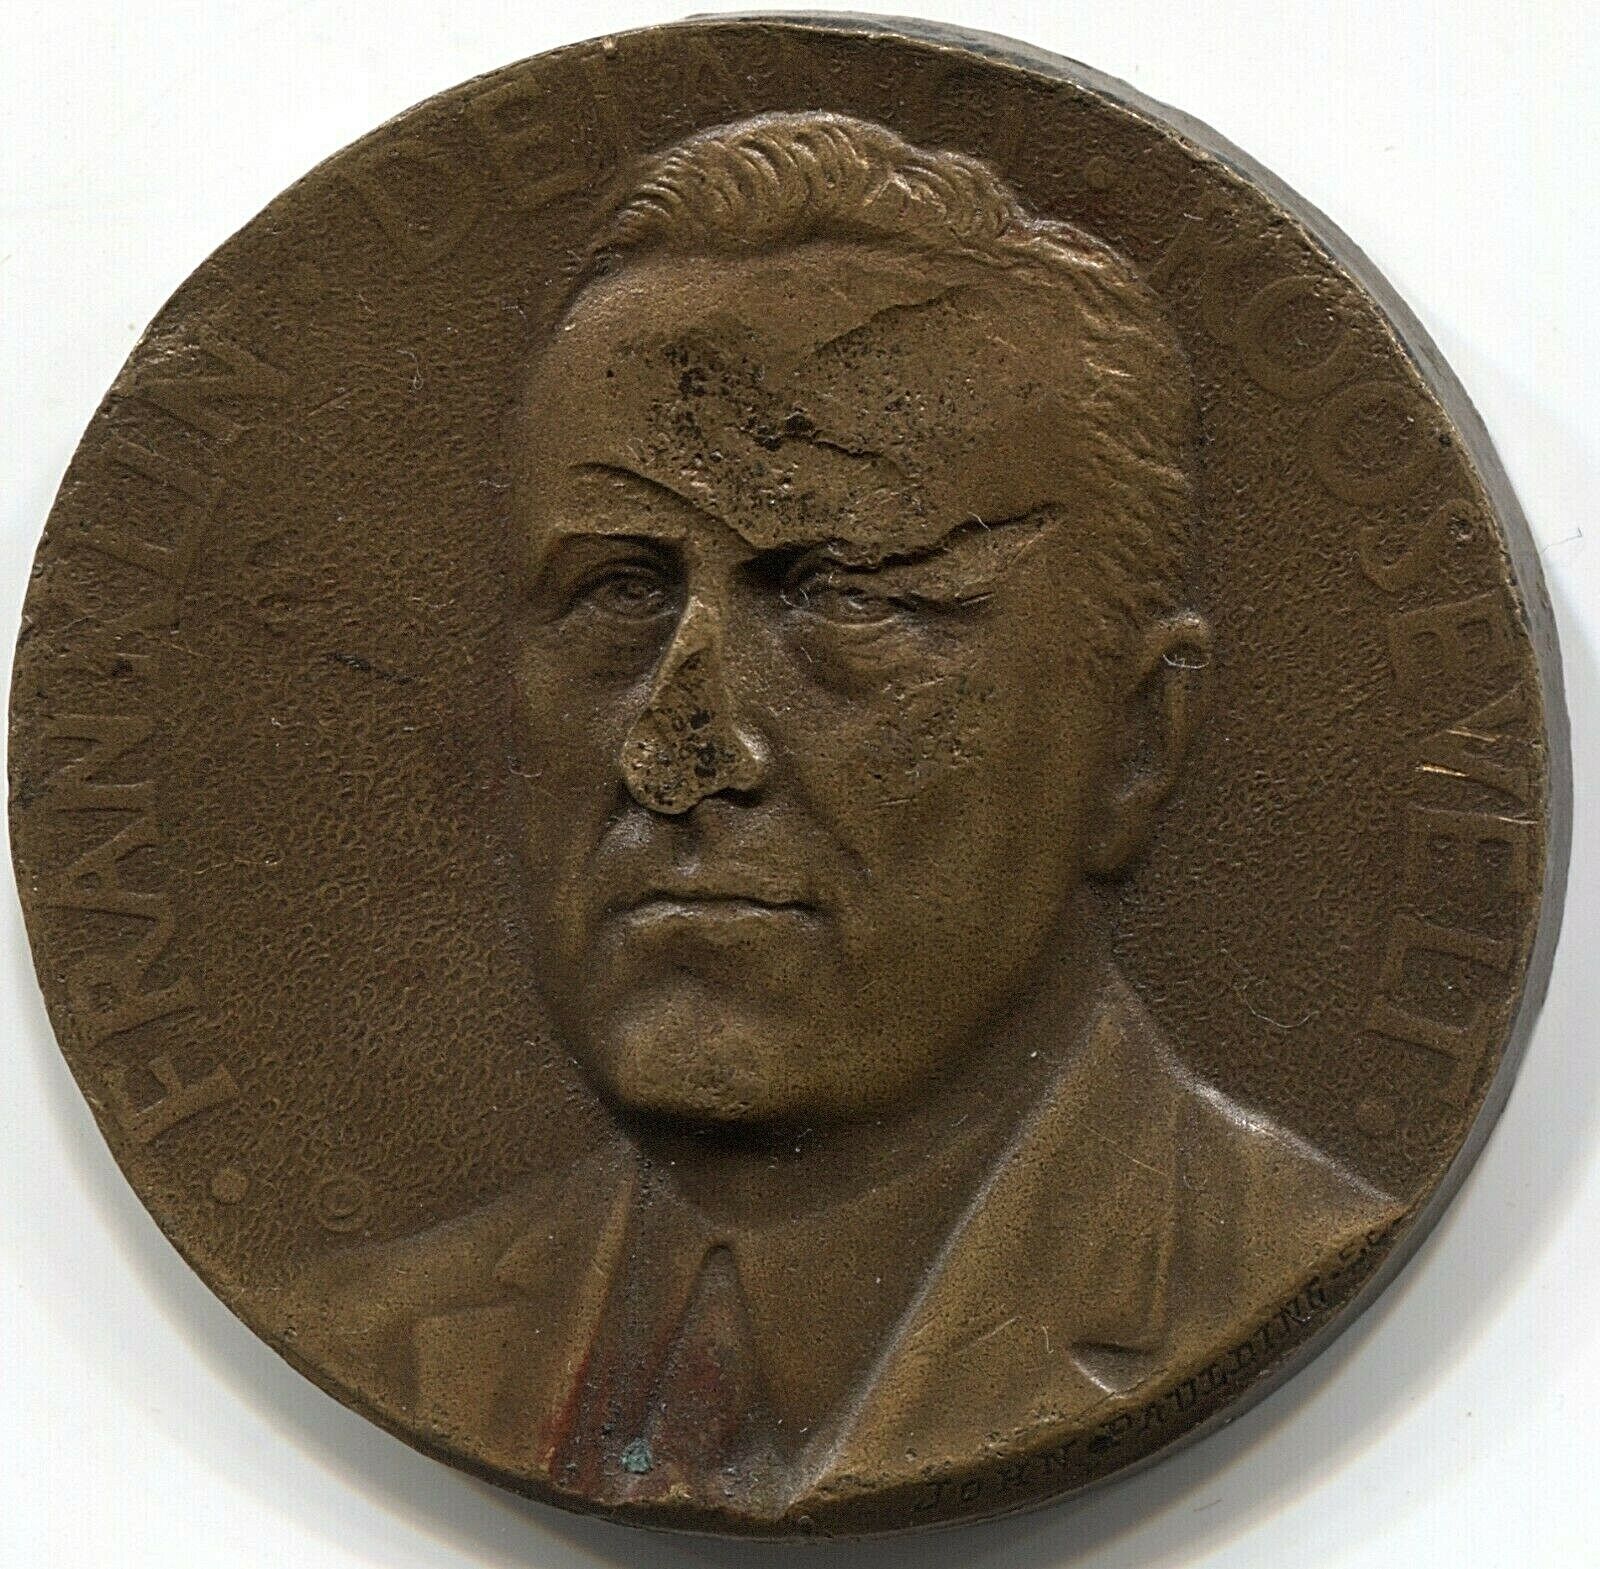 1933 Franklin D. Roosevelt Commemorative Achievement Medal  - LIT 9016